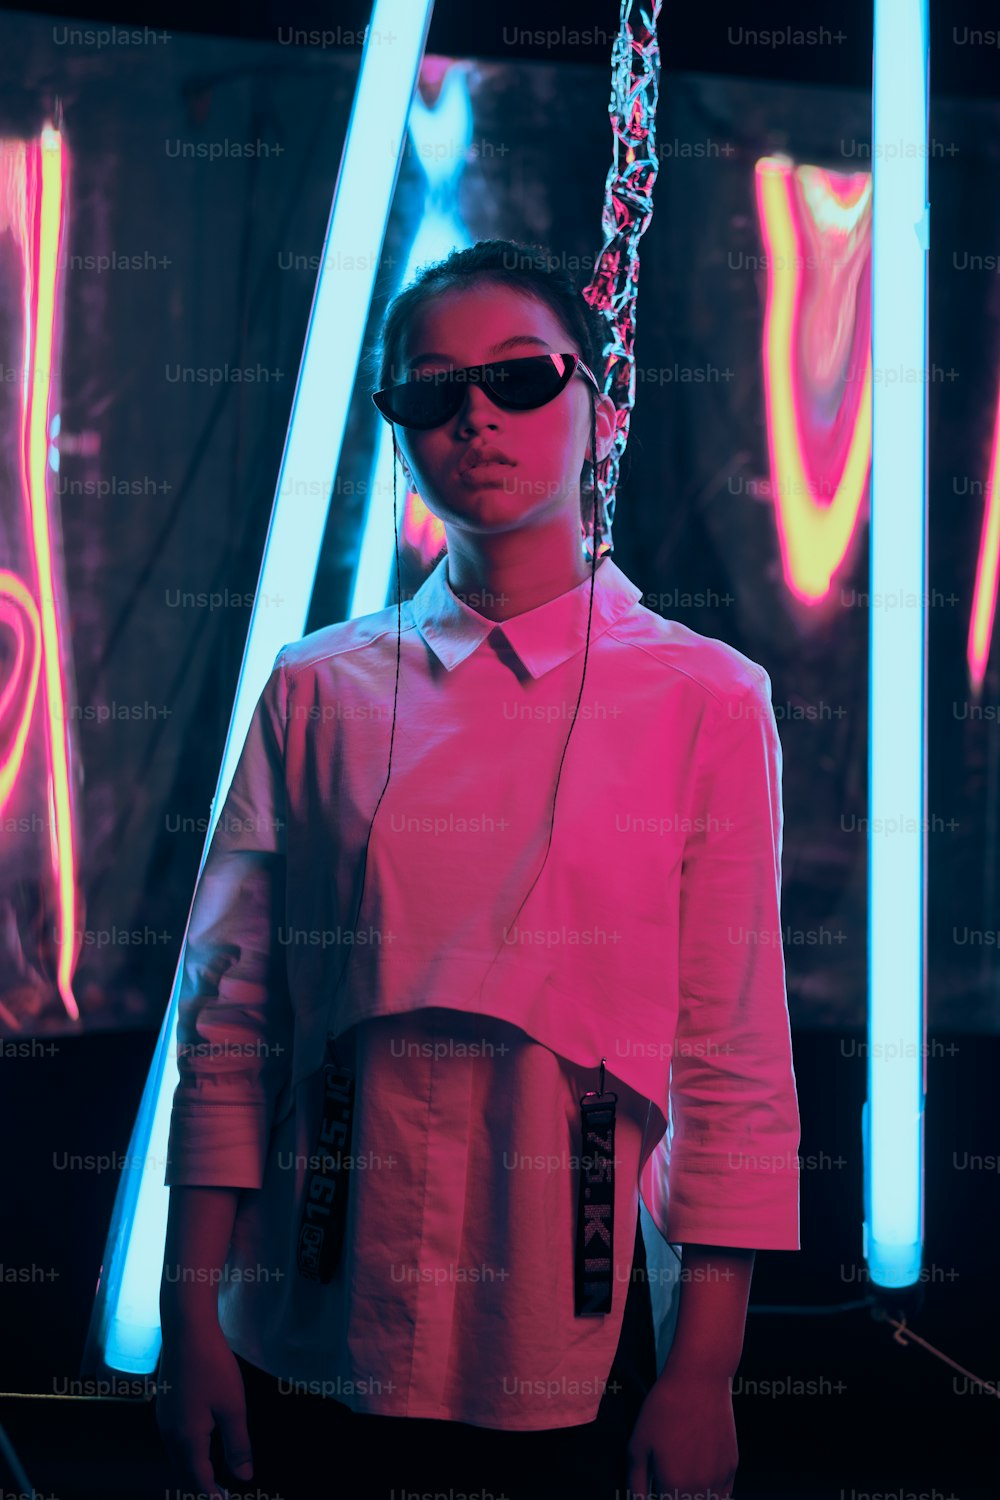 スタイリッシュな三日月形のサングラスをかけたアジアの若い10代の女の子のポートレート、赤いアンフブルーのネオンライト。サイバーで未来的なポートレートのコンセプト